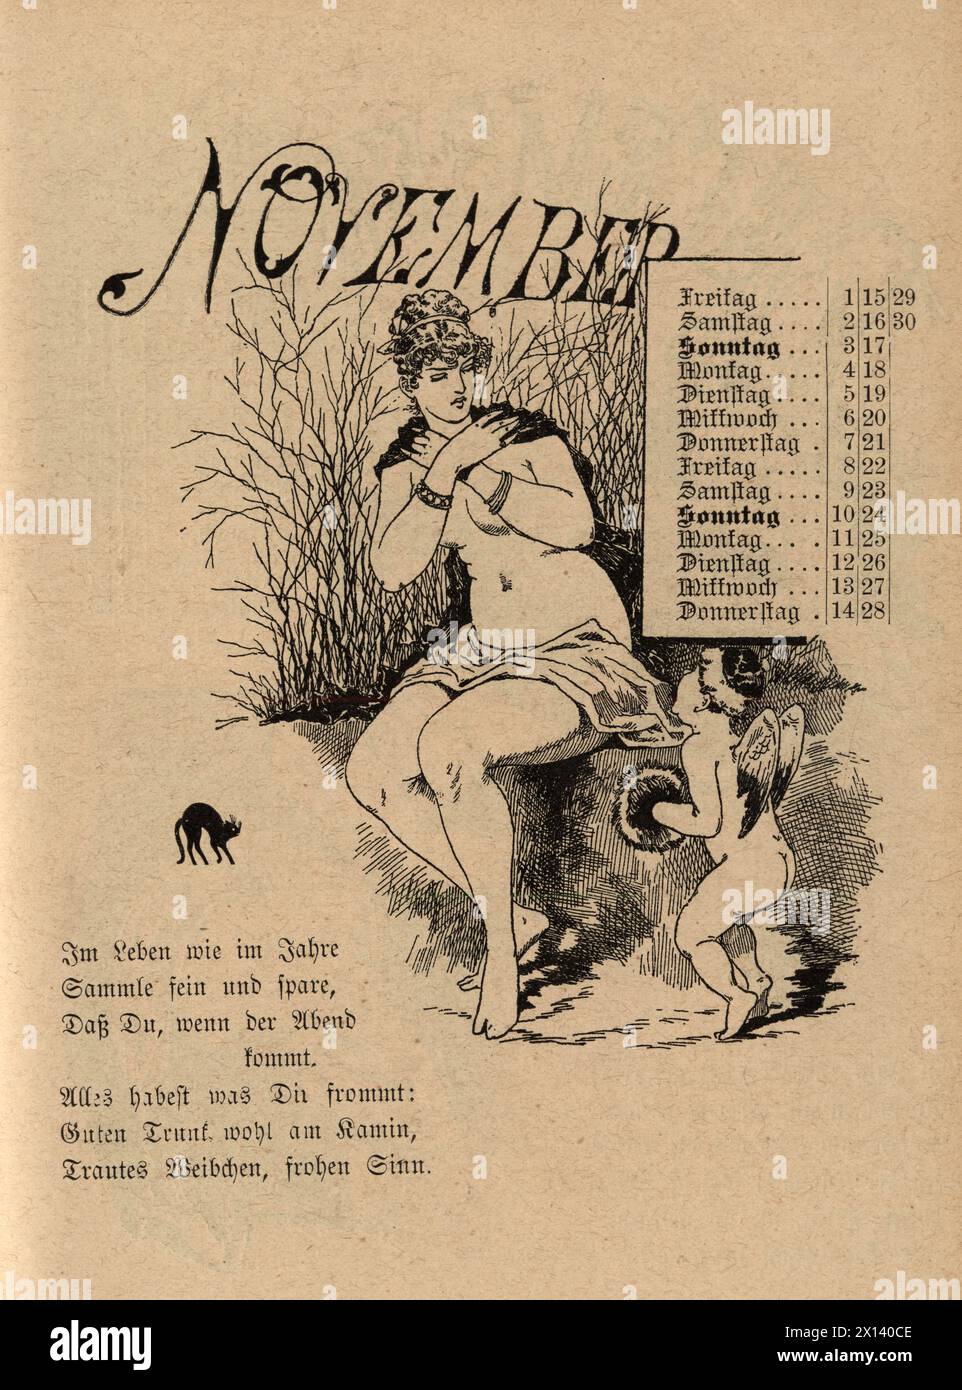 Cartoni animati vintage per il mese di novembre, donna con cupido, amore, tedesco, XIX secolo, 1889 Foto Stock